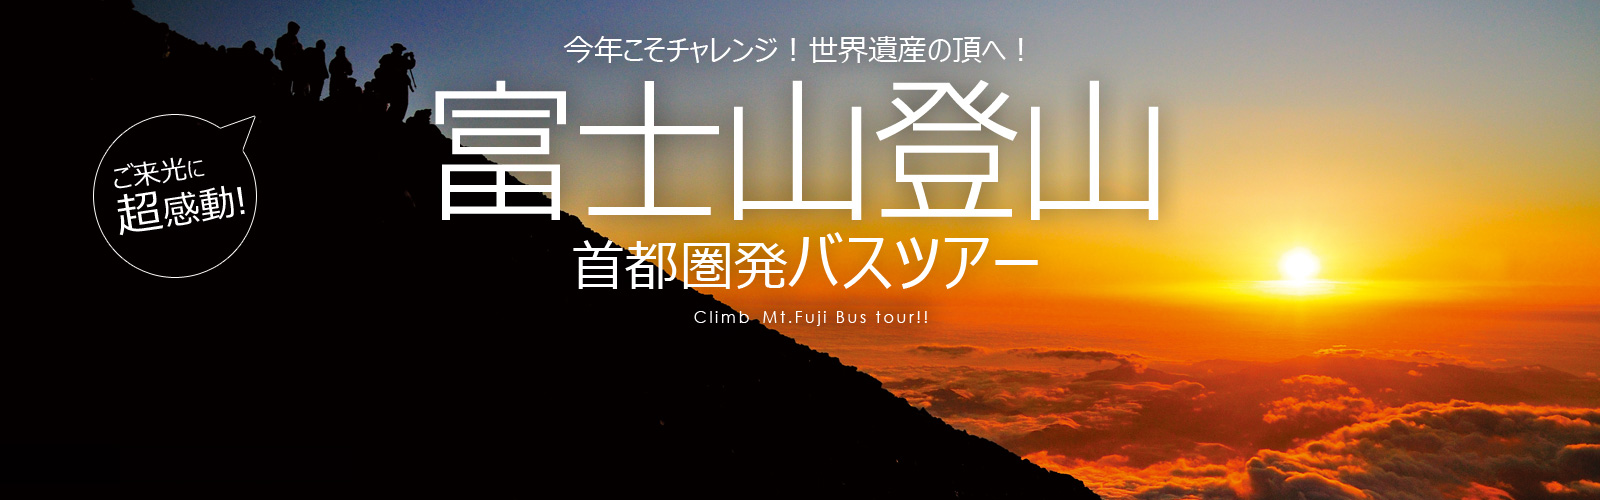 富士山登山ツアー 富士登山バスツアー21 Vipツアー Viptour